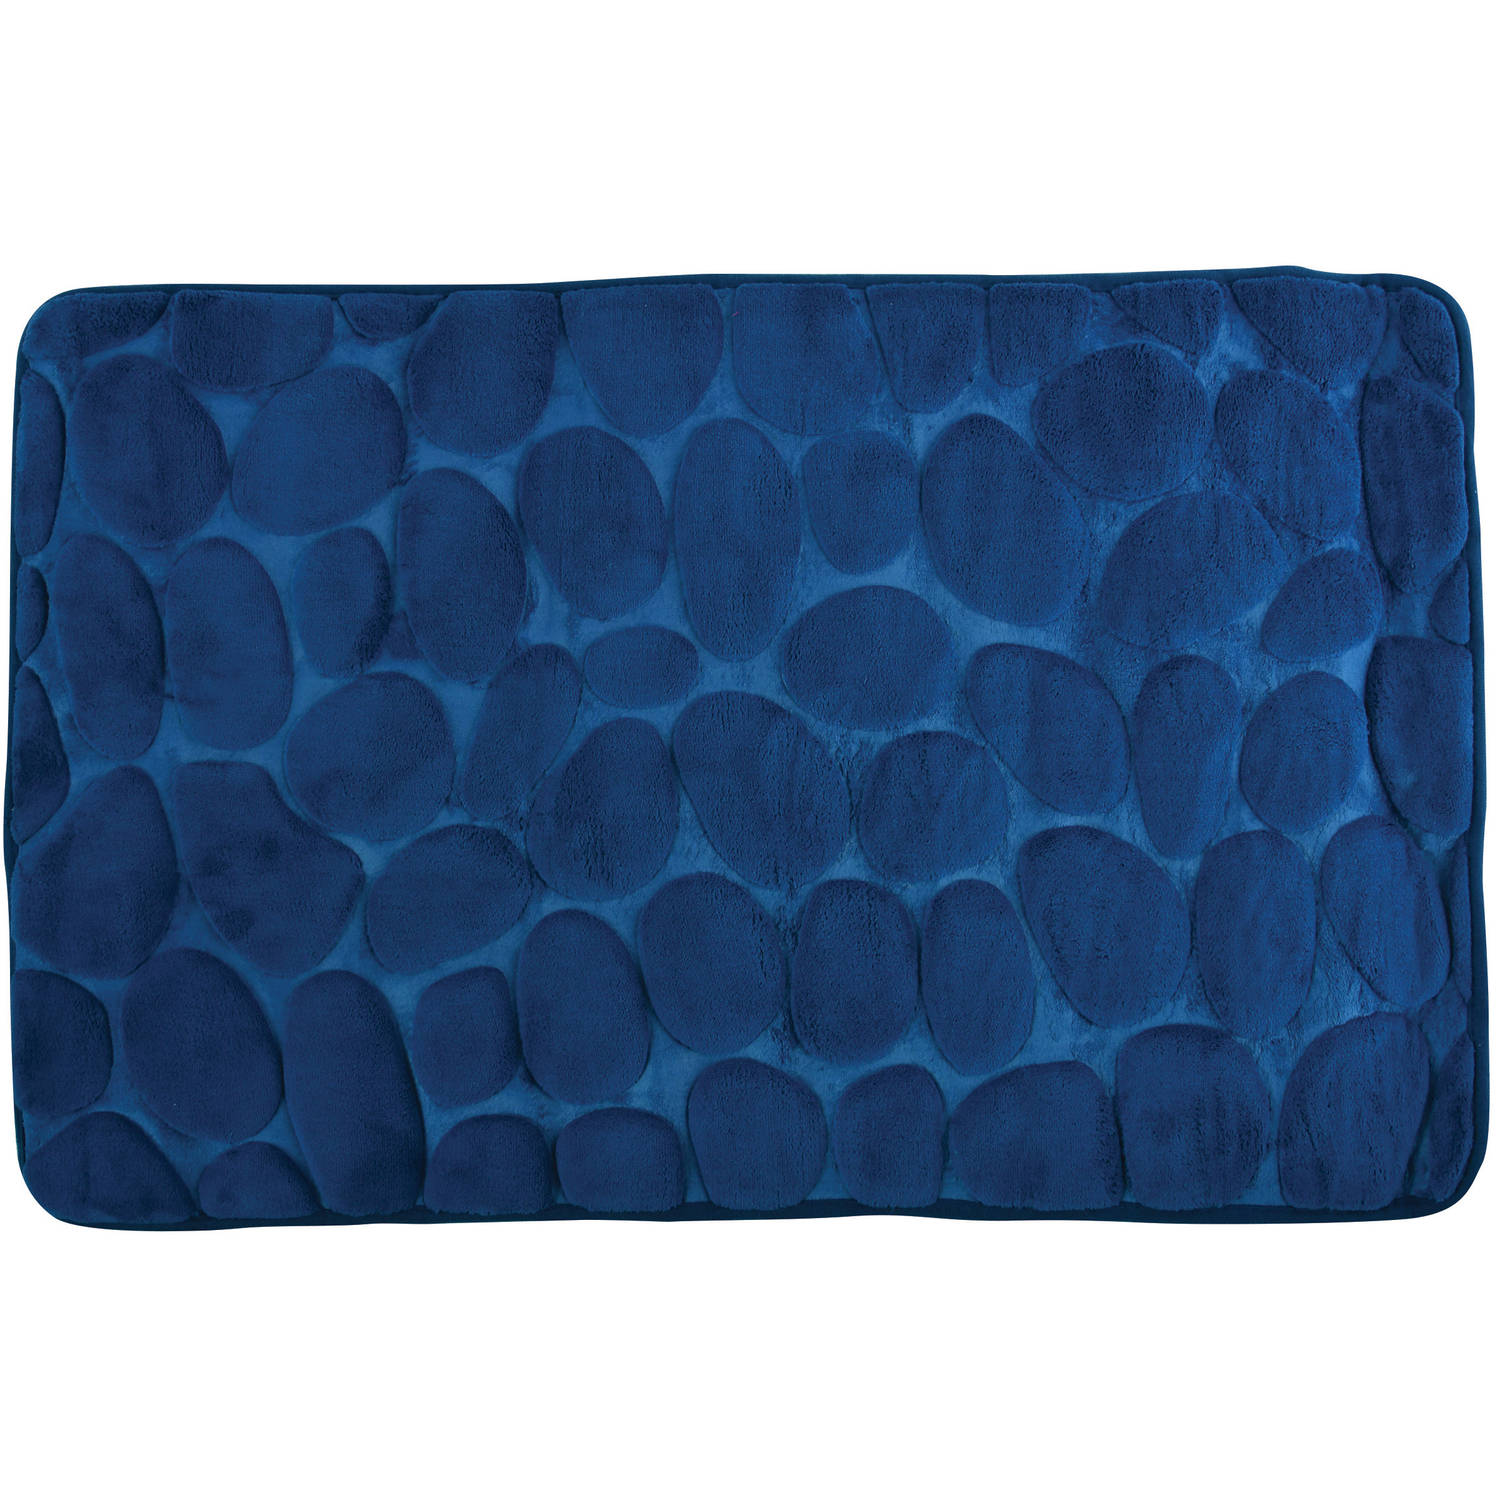 Badkamerkleedje-badmat tapijt kiezel motief vloermat marine blauw 50 x 80 cm laagpolig Badmatjes